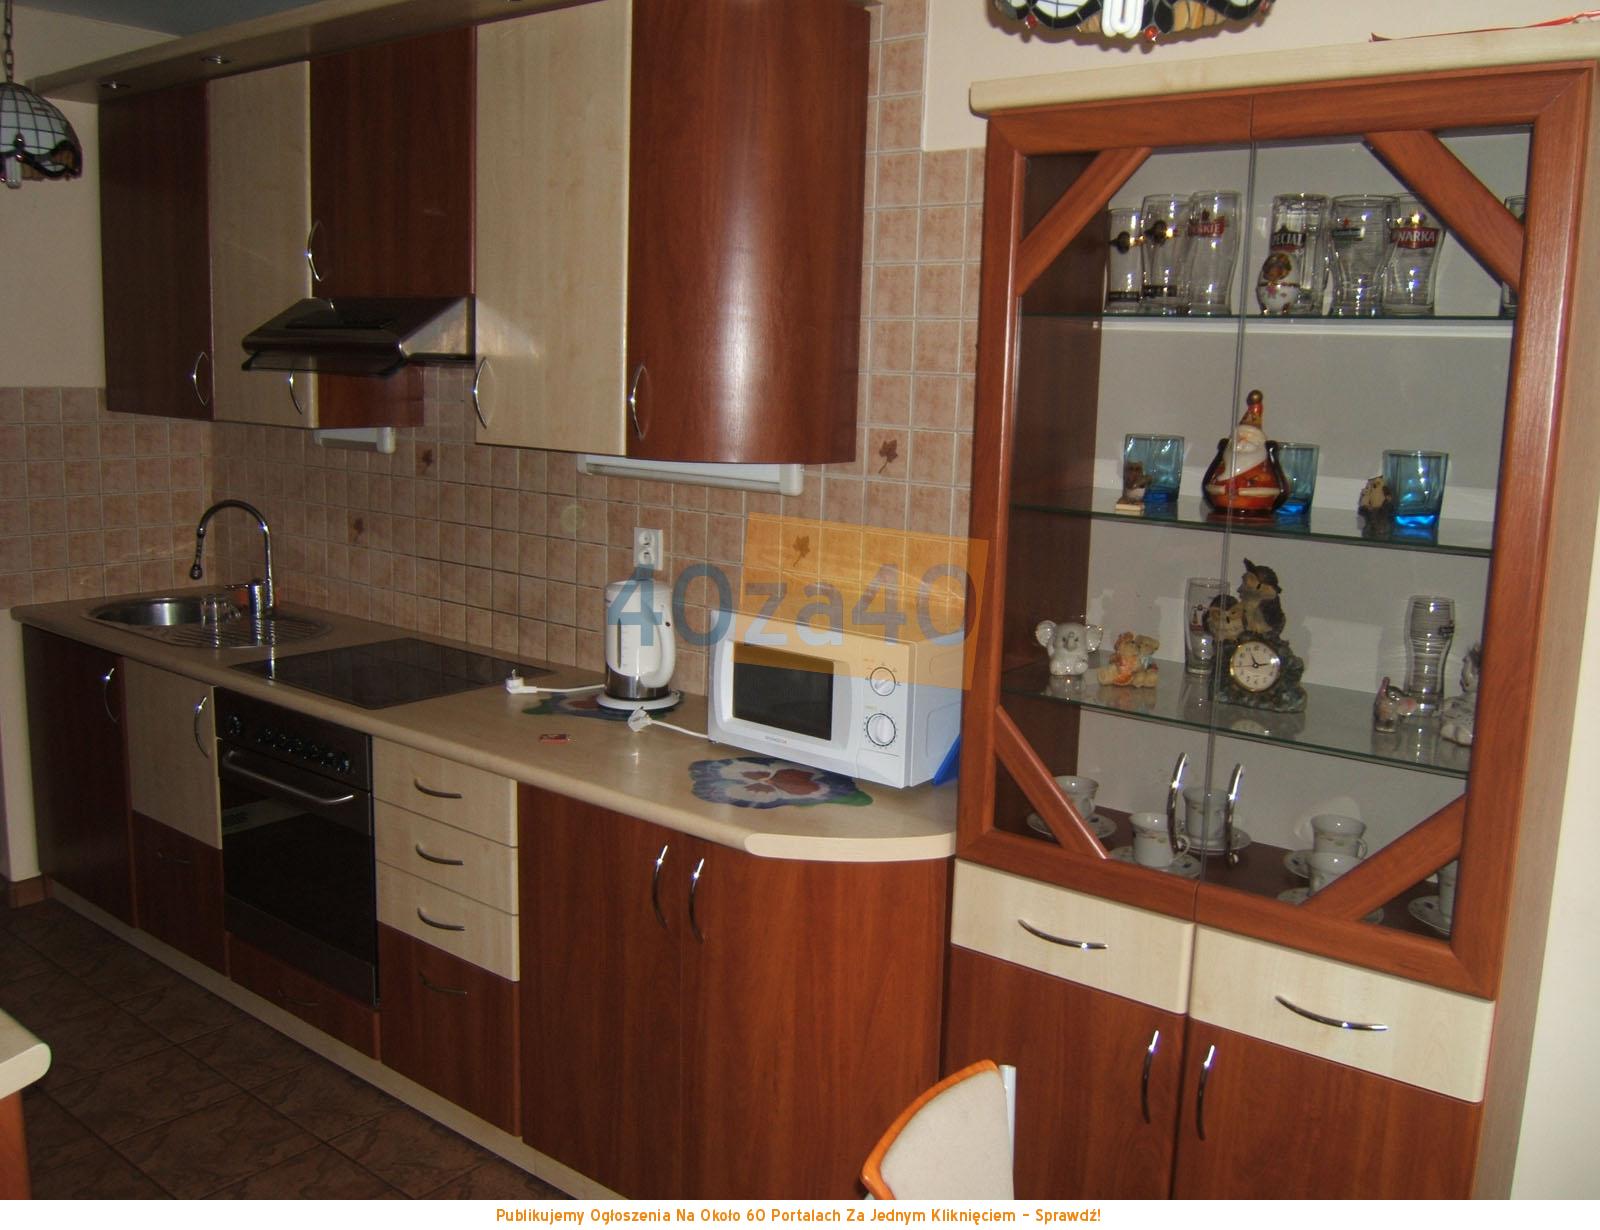 Mieszkanie do wynajęcia, pokoje: 2, cena: 800,00 PLN, Giżycko, kontakt: 502 506 022